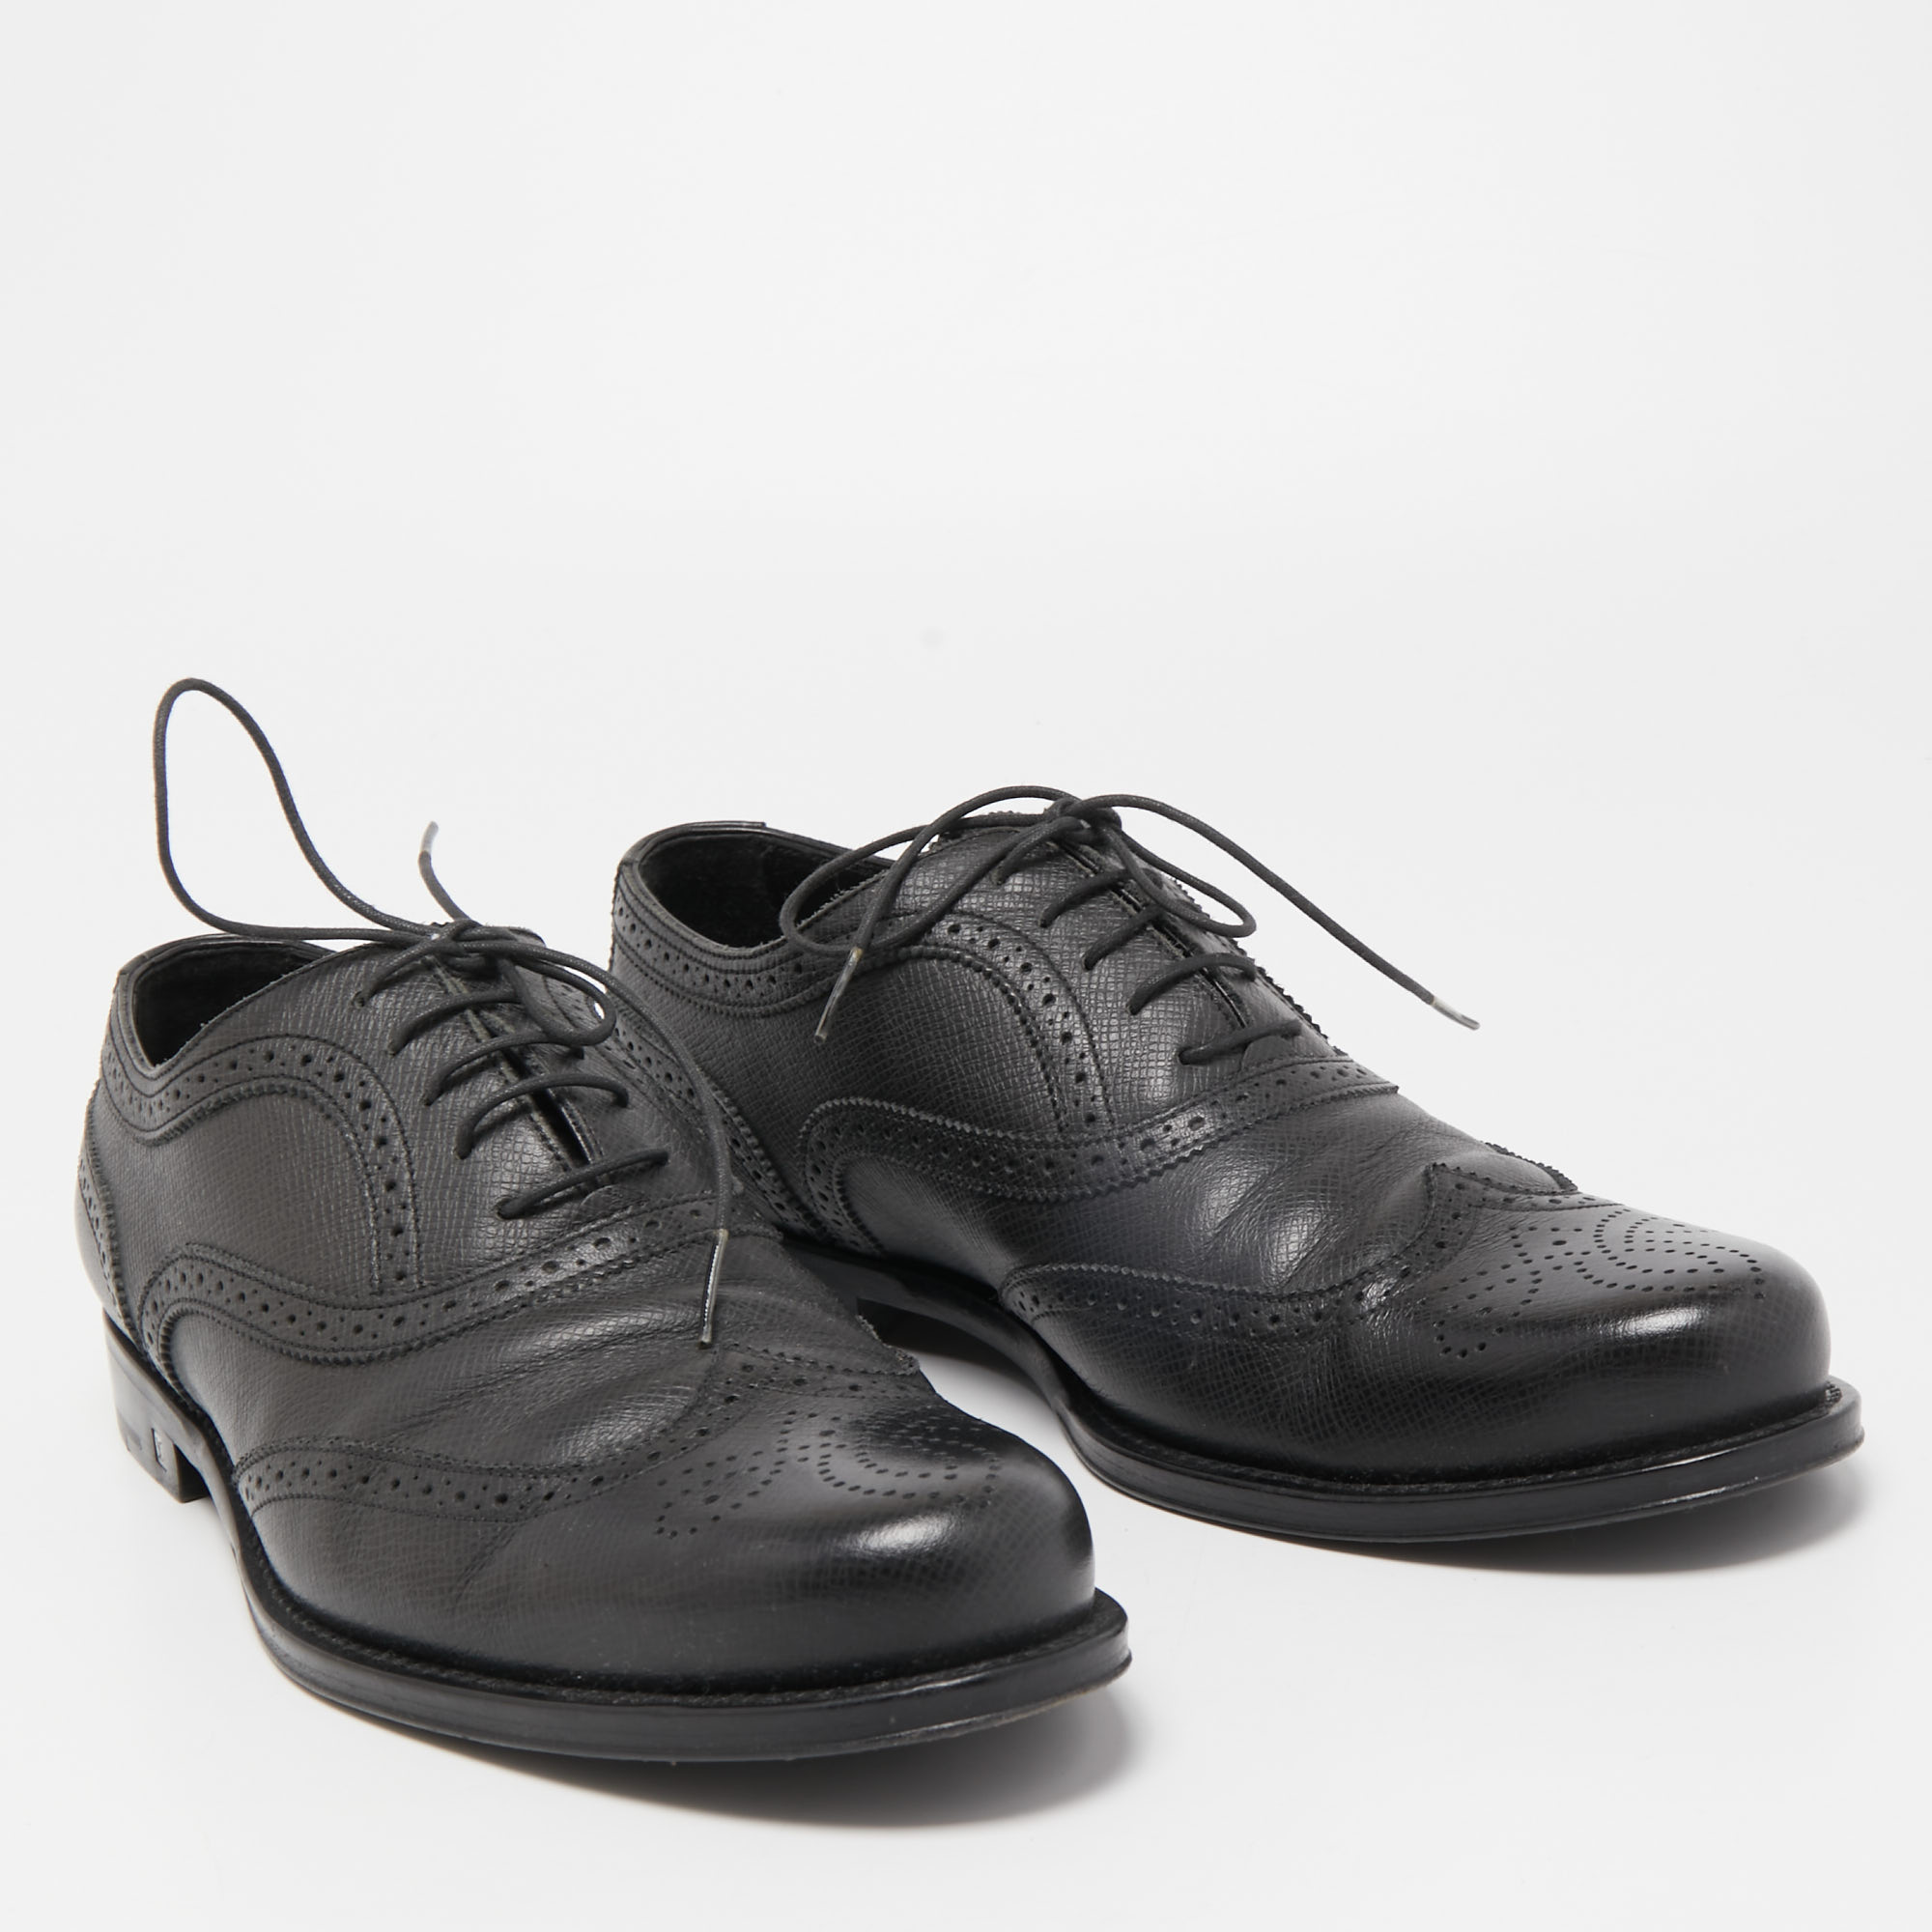 Louis Vuitton Black Leather Lace Up Oxfords Size 41.5